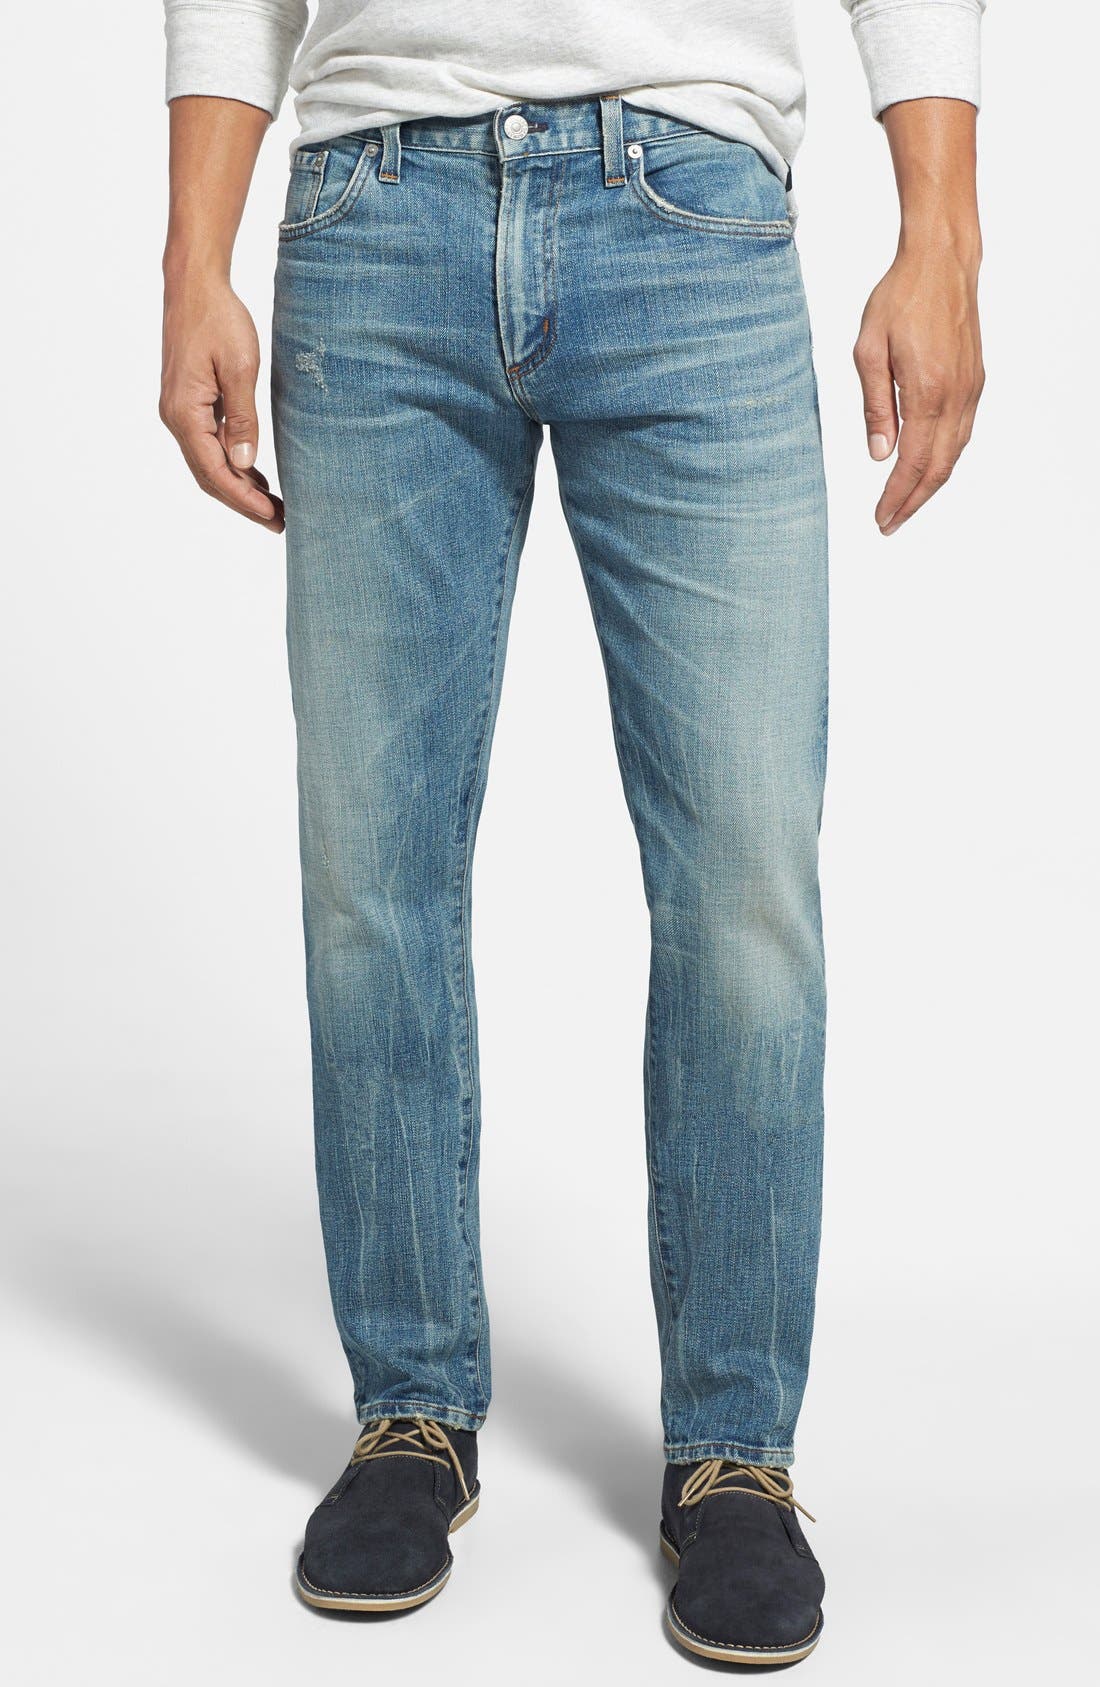 paige jeans fit guide mens